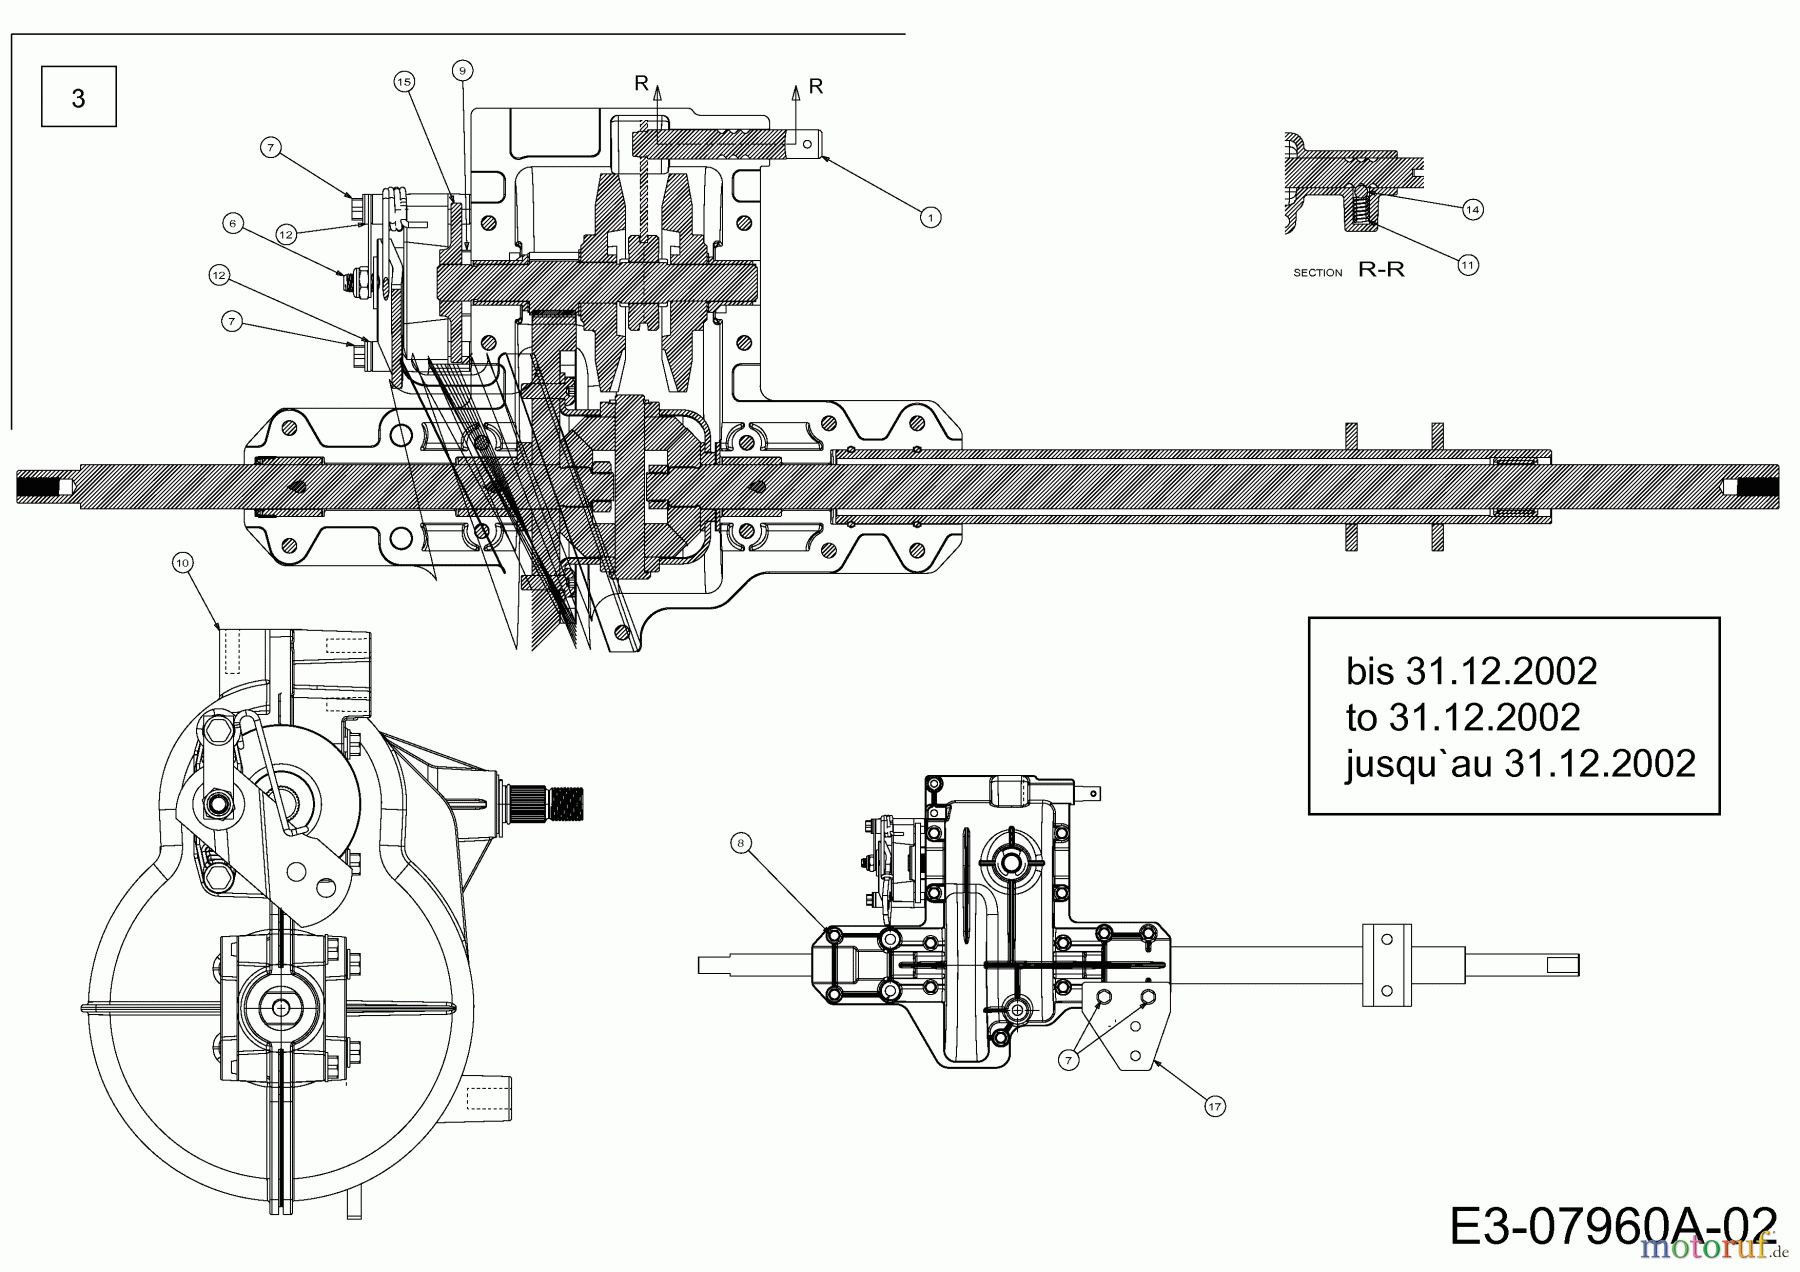  Edt Rasentraktoren EDT 135-92 13AA509E610  (2002) Getriebe 618-0580 bis 31.12.2002